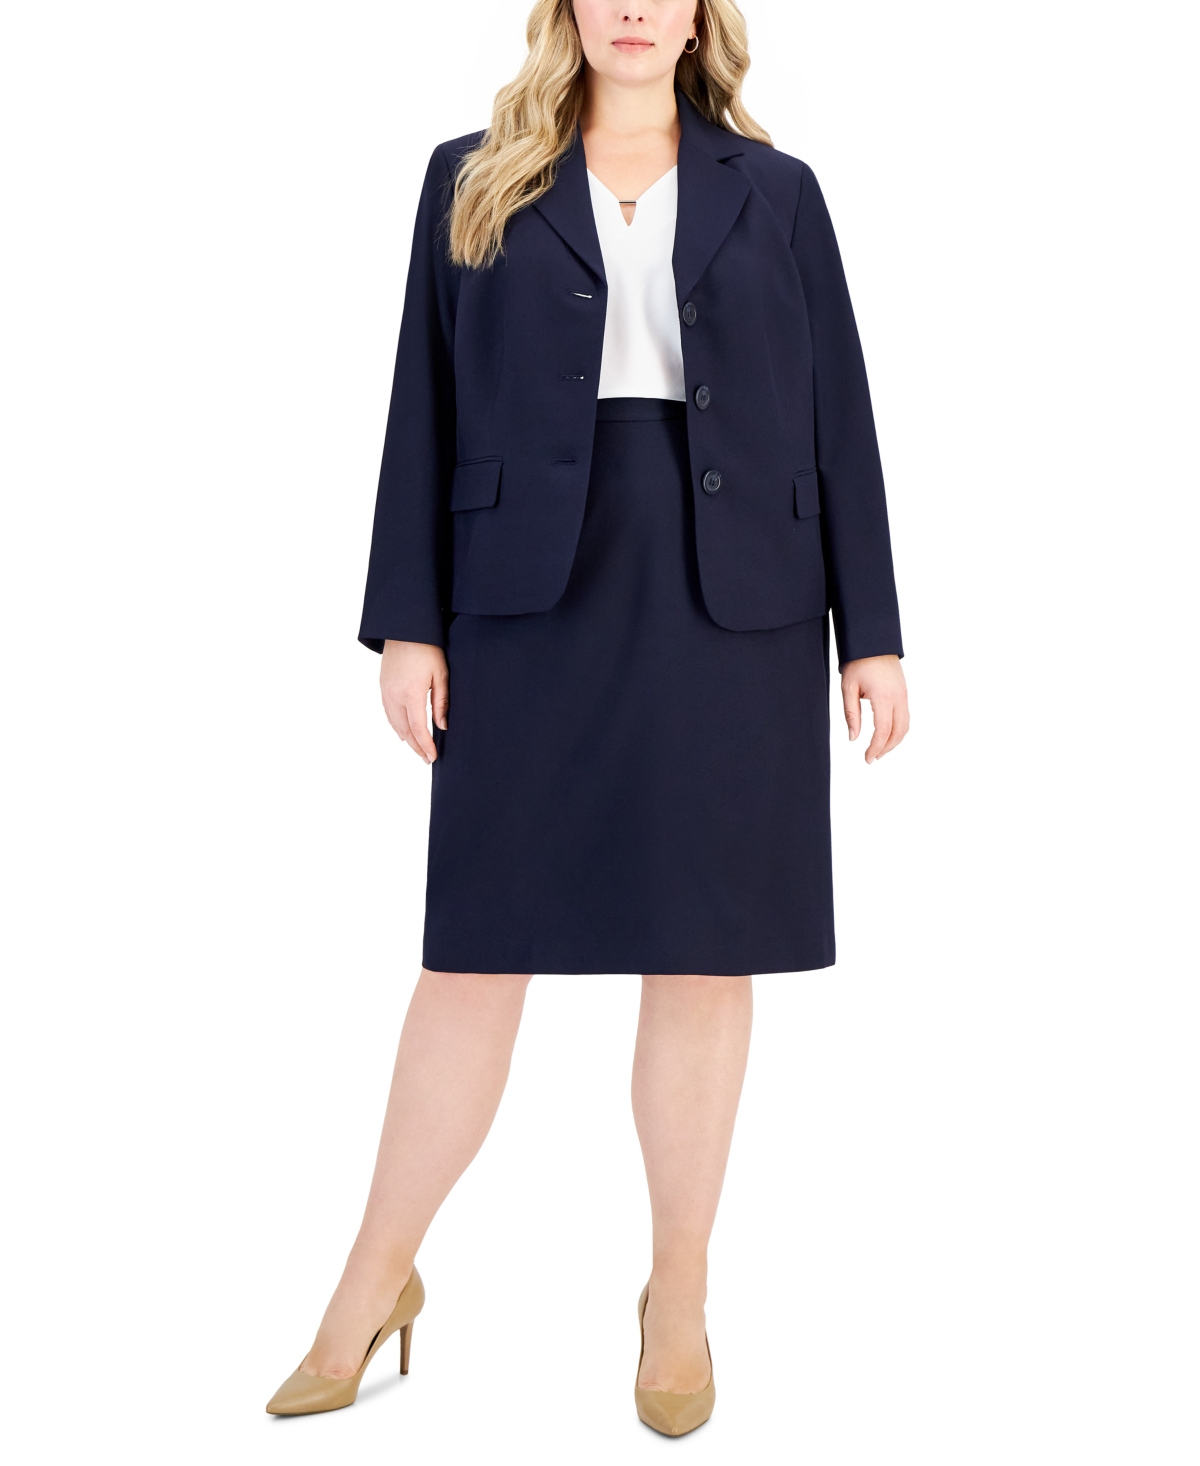 Le Suit Plus Size Button-front Pencil Skirt Suit In Navy